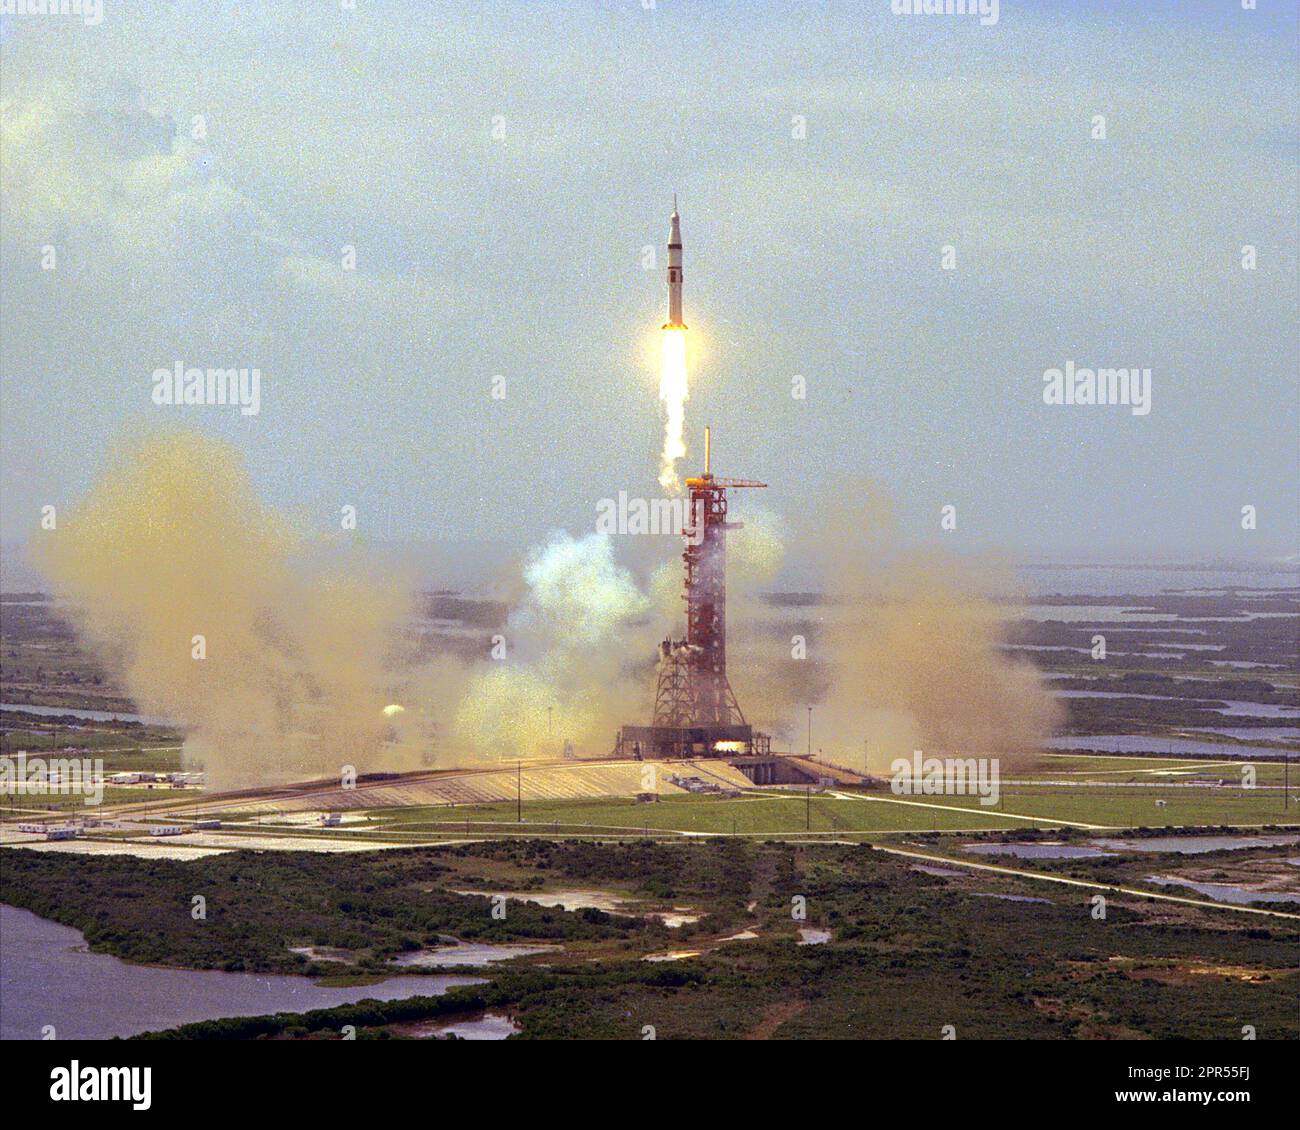 Das Startfahrzeug Apollo Sojus Test Project Saturn IB, das um 15:50 Uhr an Bord des Apollo Command Module vom Startkomplex 39B des KSC entfernt war, waren die ASTP-Astronauten Thomas Stafford, Vance Brand und Donald Slayton. Die Astronauten werden sich treffen und mit einem Sojus-Raumschiff andocken, das heute Morgen von der Baikonur-Startanlage in der Sowjetunion gestartet wurde und die sowjetischen Kosmonauten Aleksey Leonov und Valerly Kubasov trägt. Stockfoto